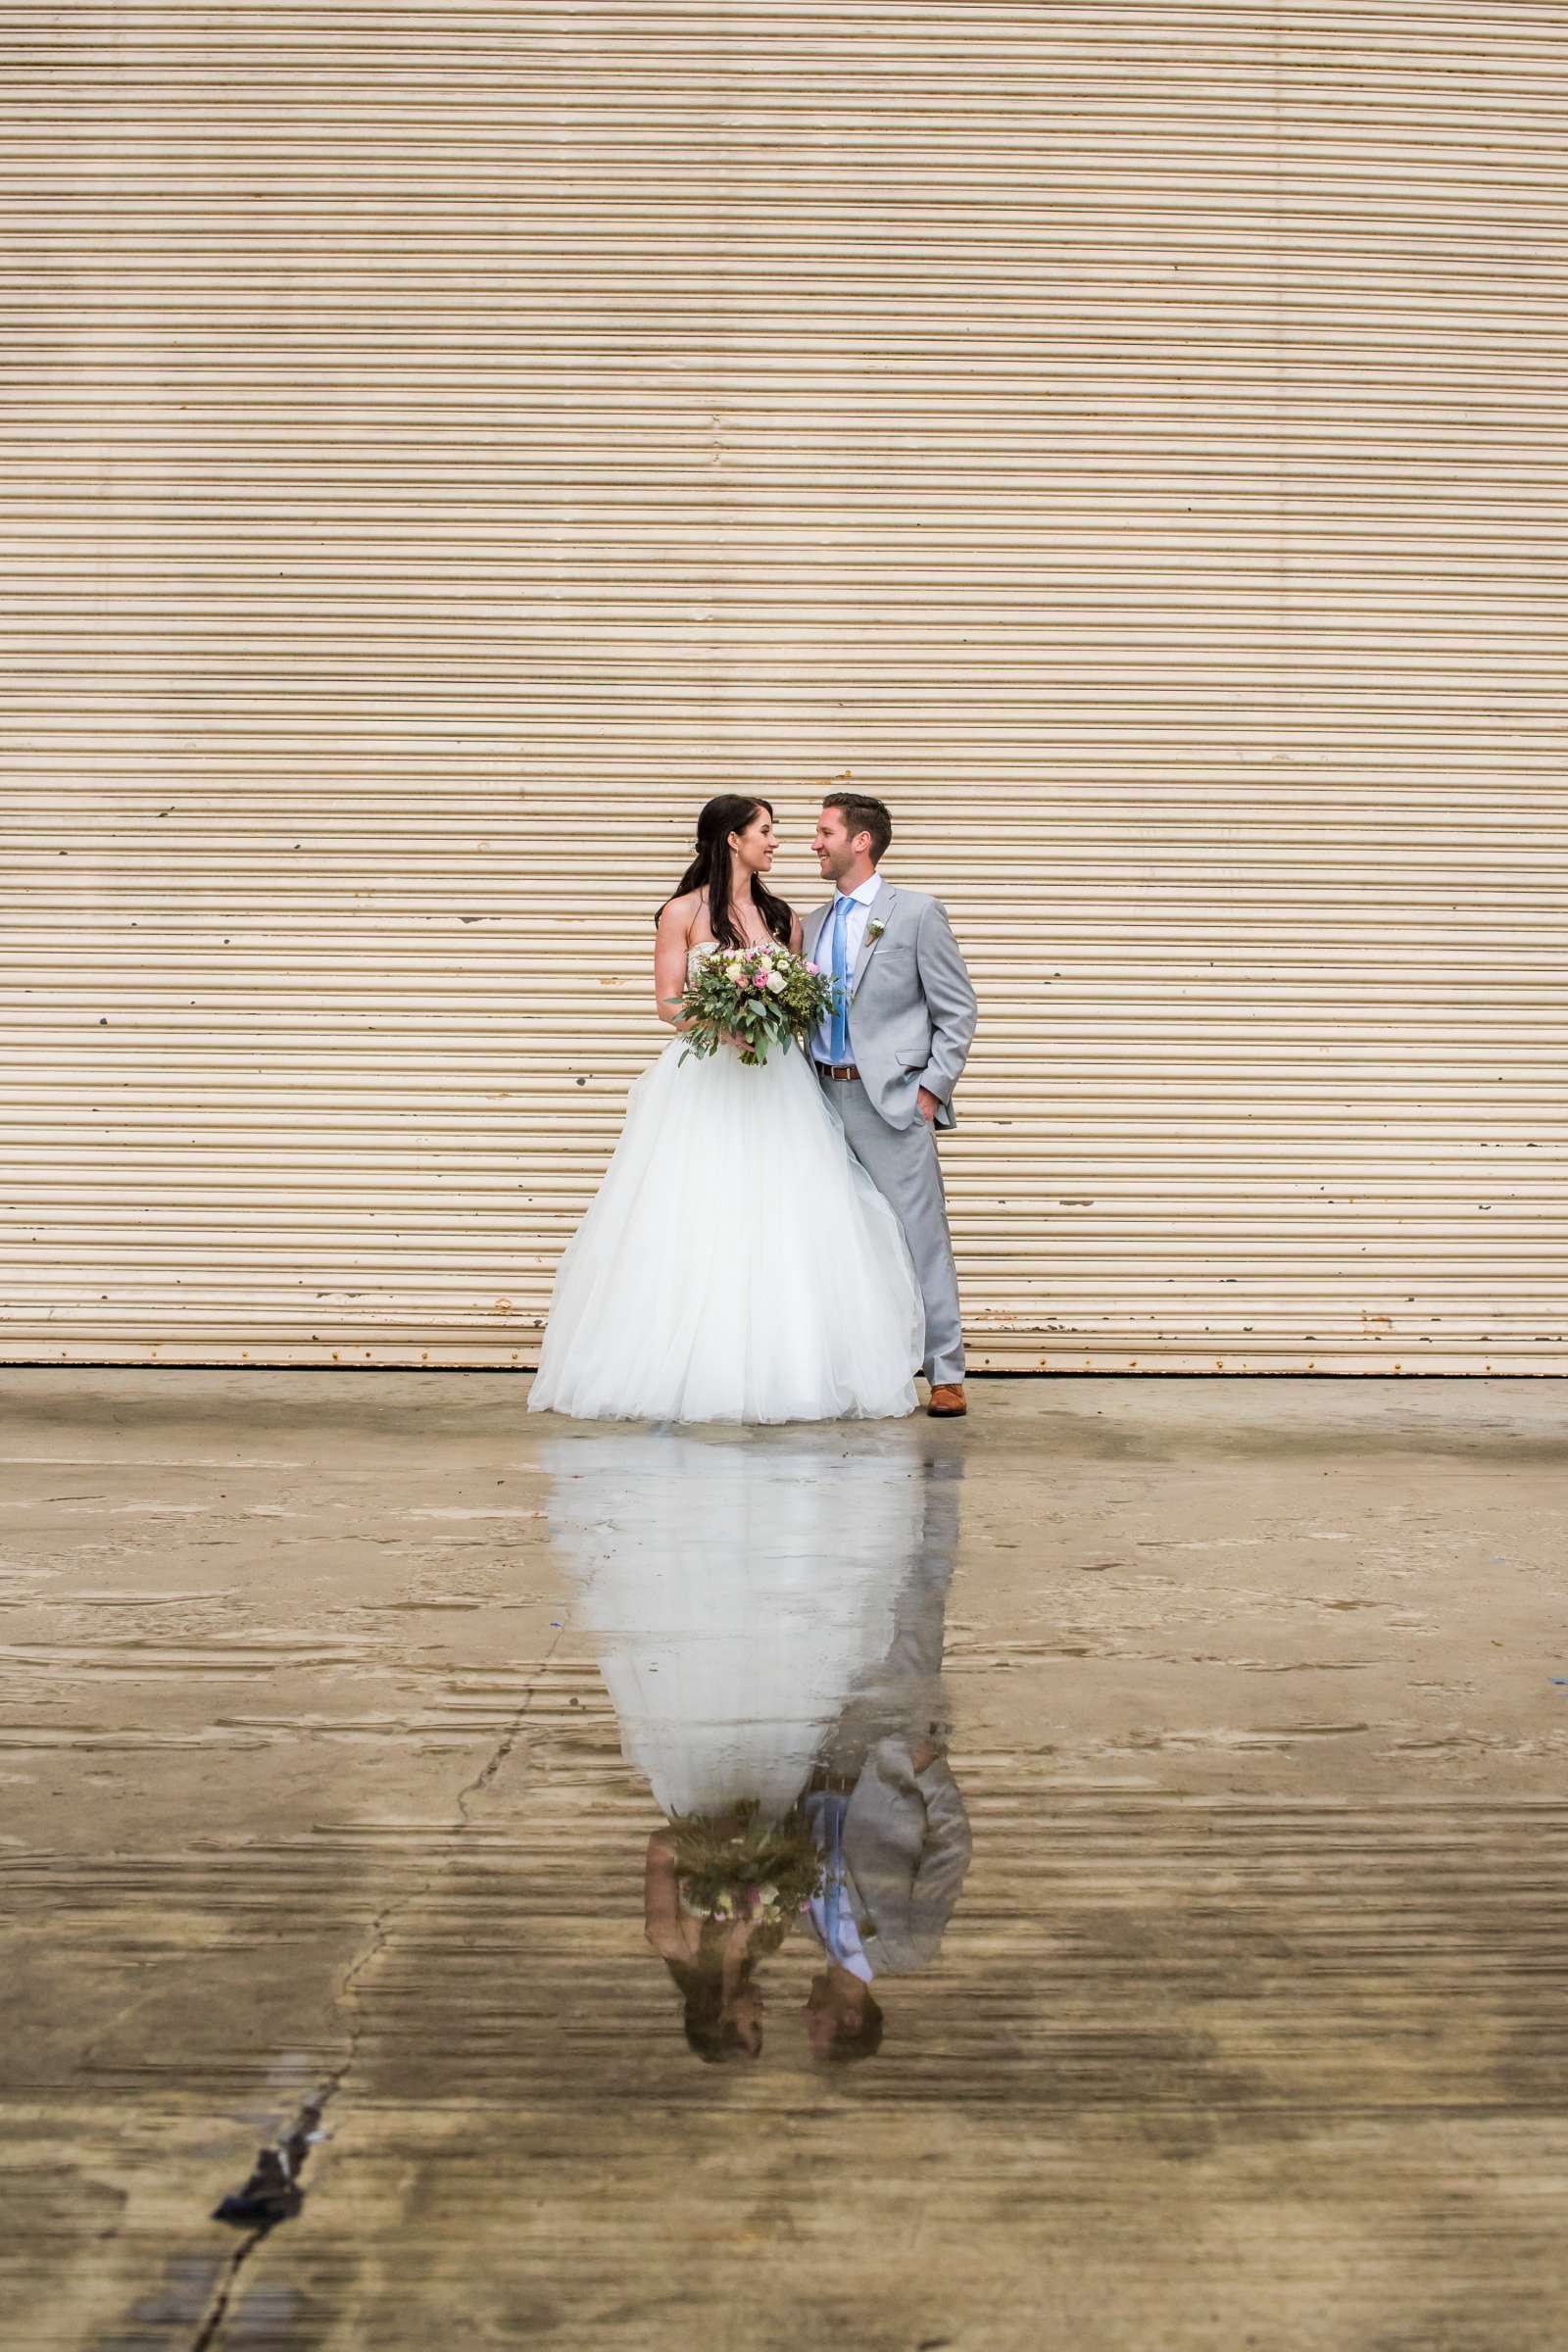 Ocean View Room Wedding, Lauren and Drew Wedding Photo #4 by True Photography